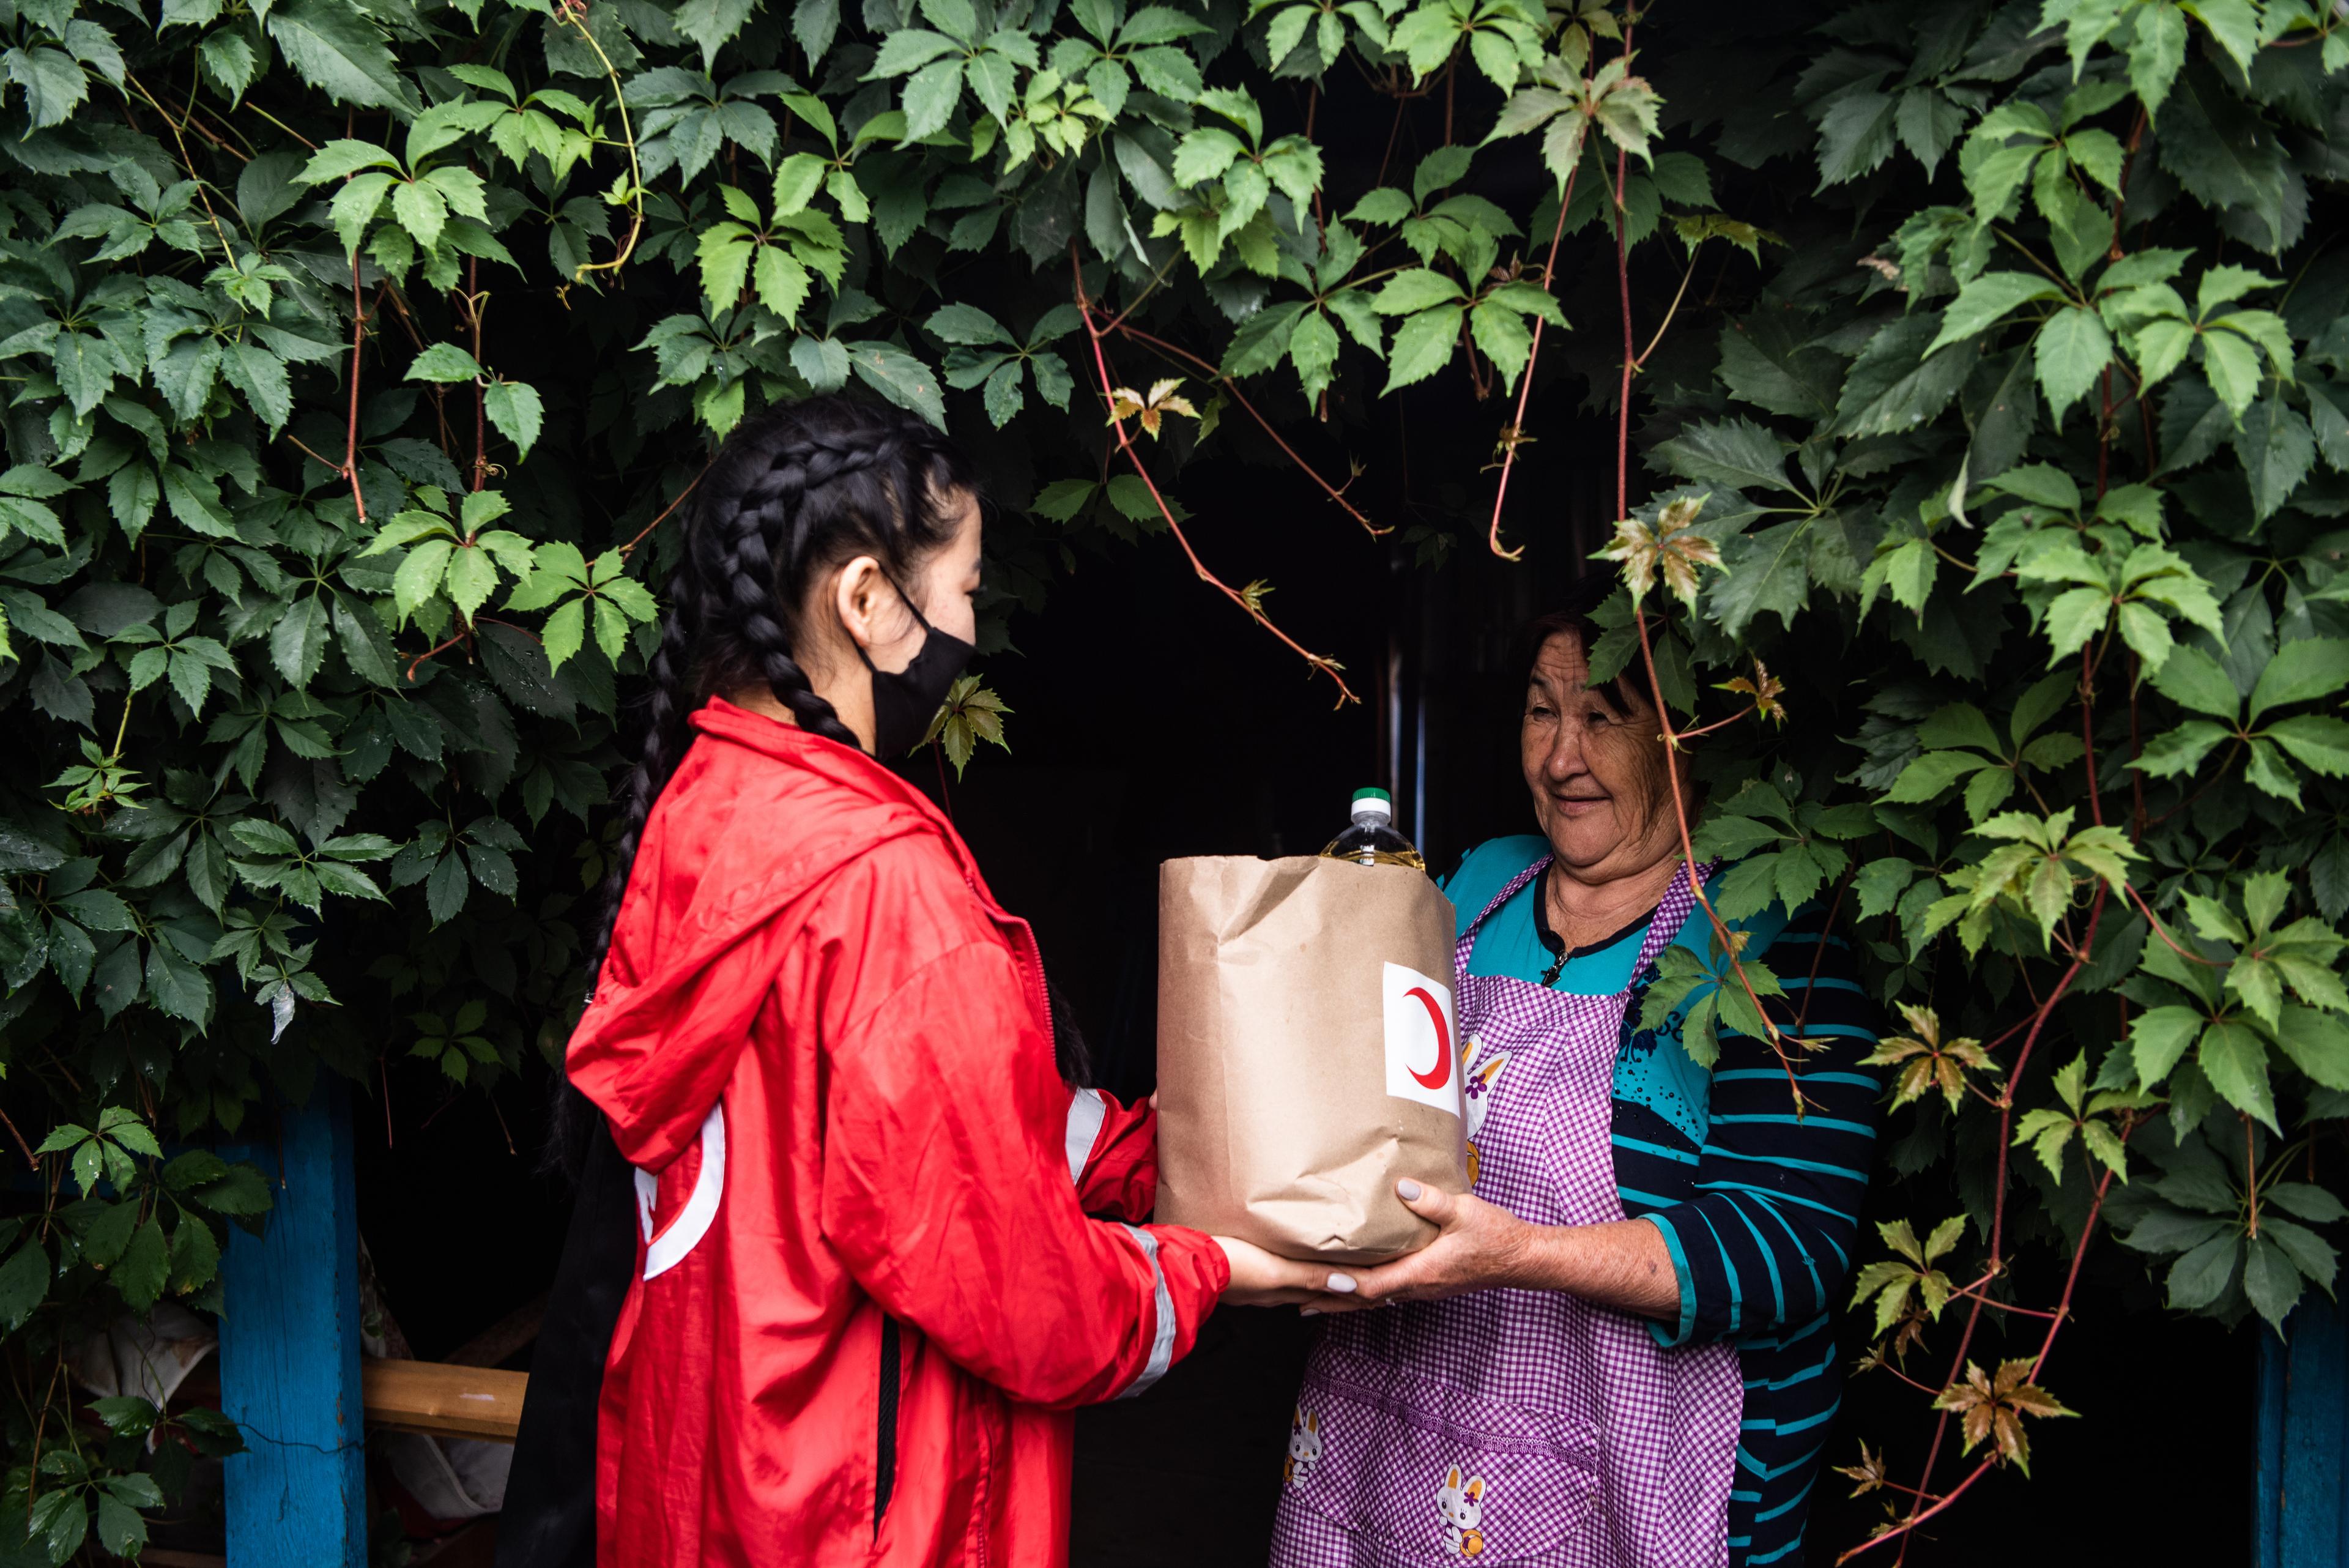 Une bénévole du Croissant-Rouge kirghize, remet un paquet de nourriture à la bénéficiaire Nurmukhanbetova Karlygash. Elle se trouve devant une maison fortement couverte de plantes.